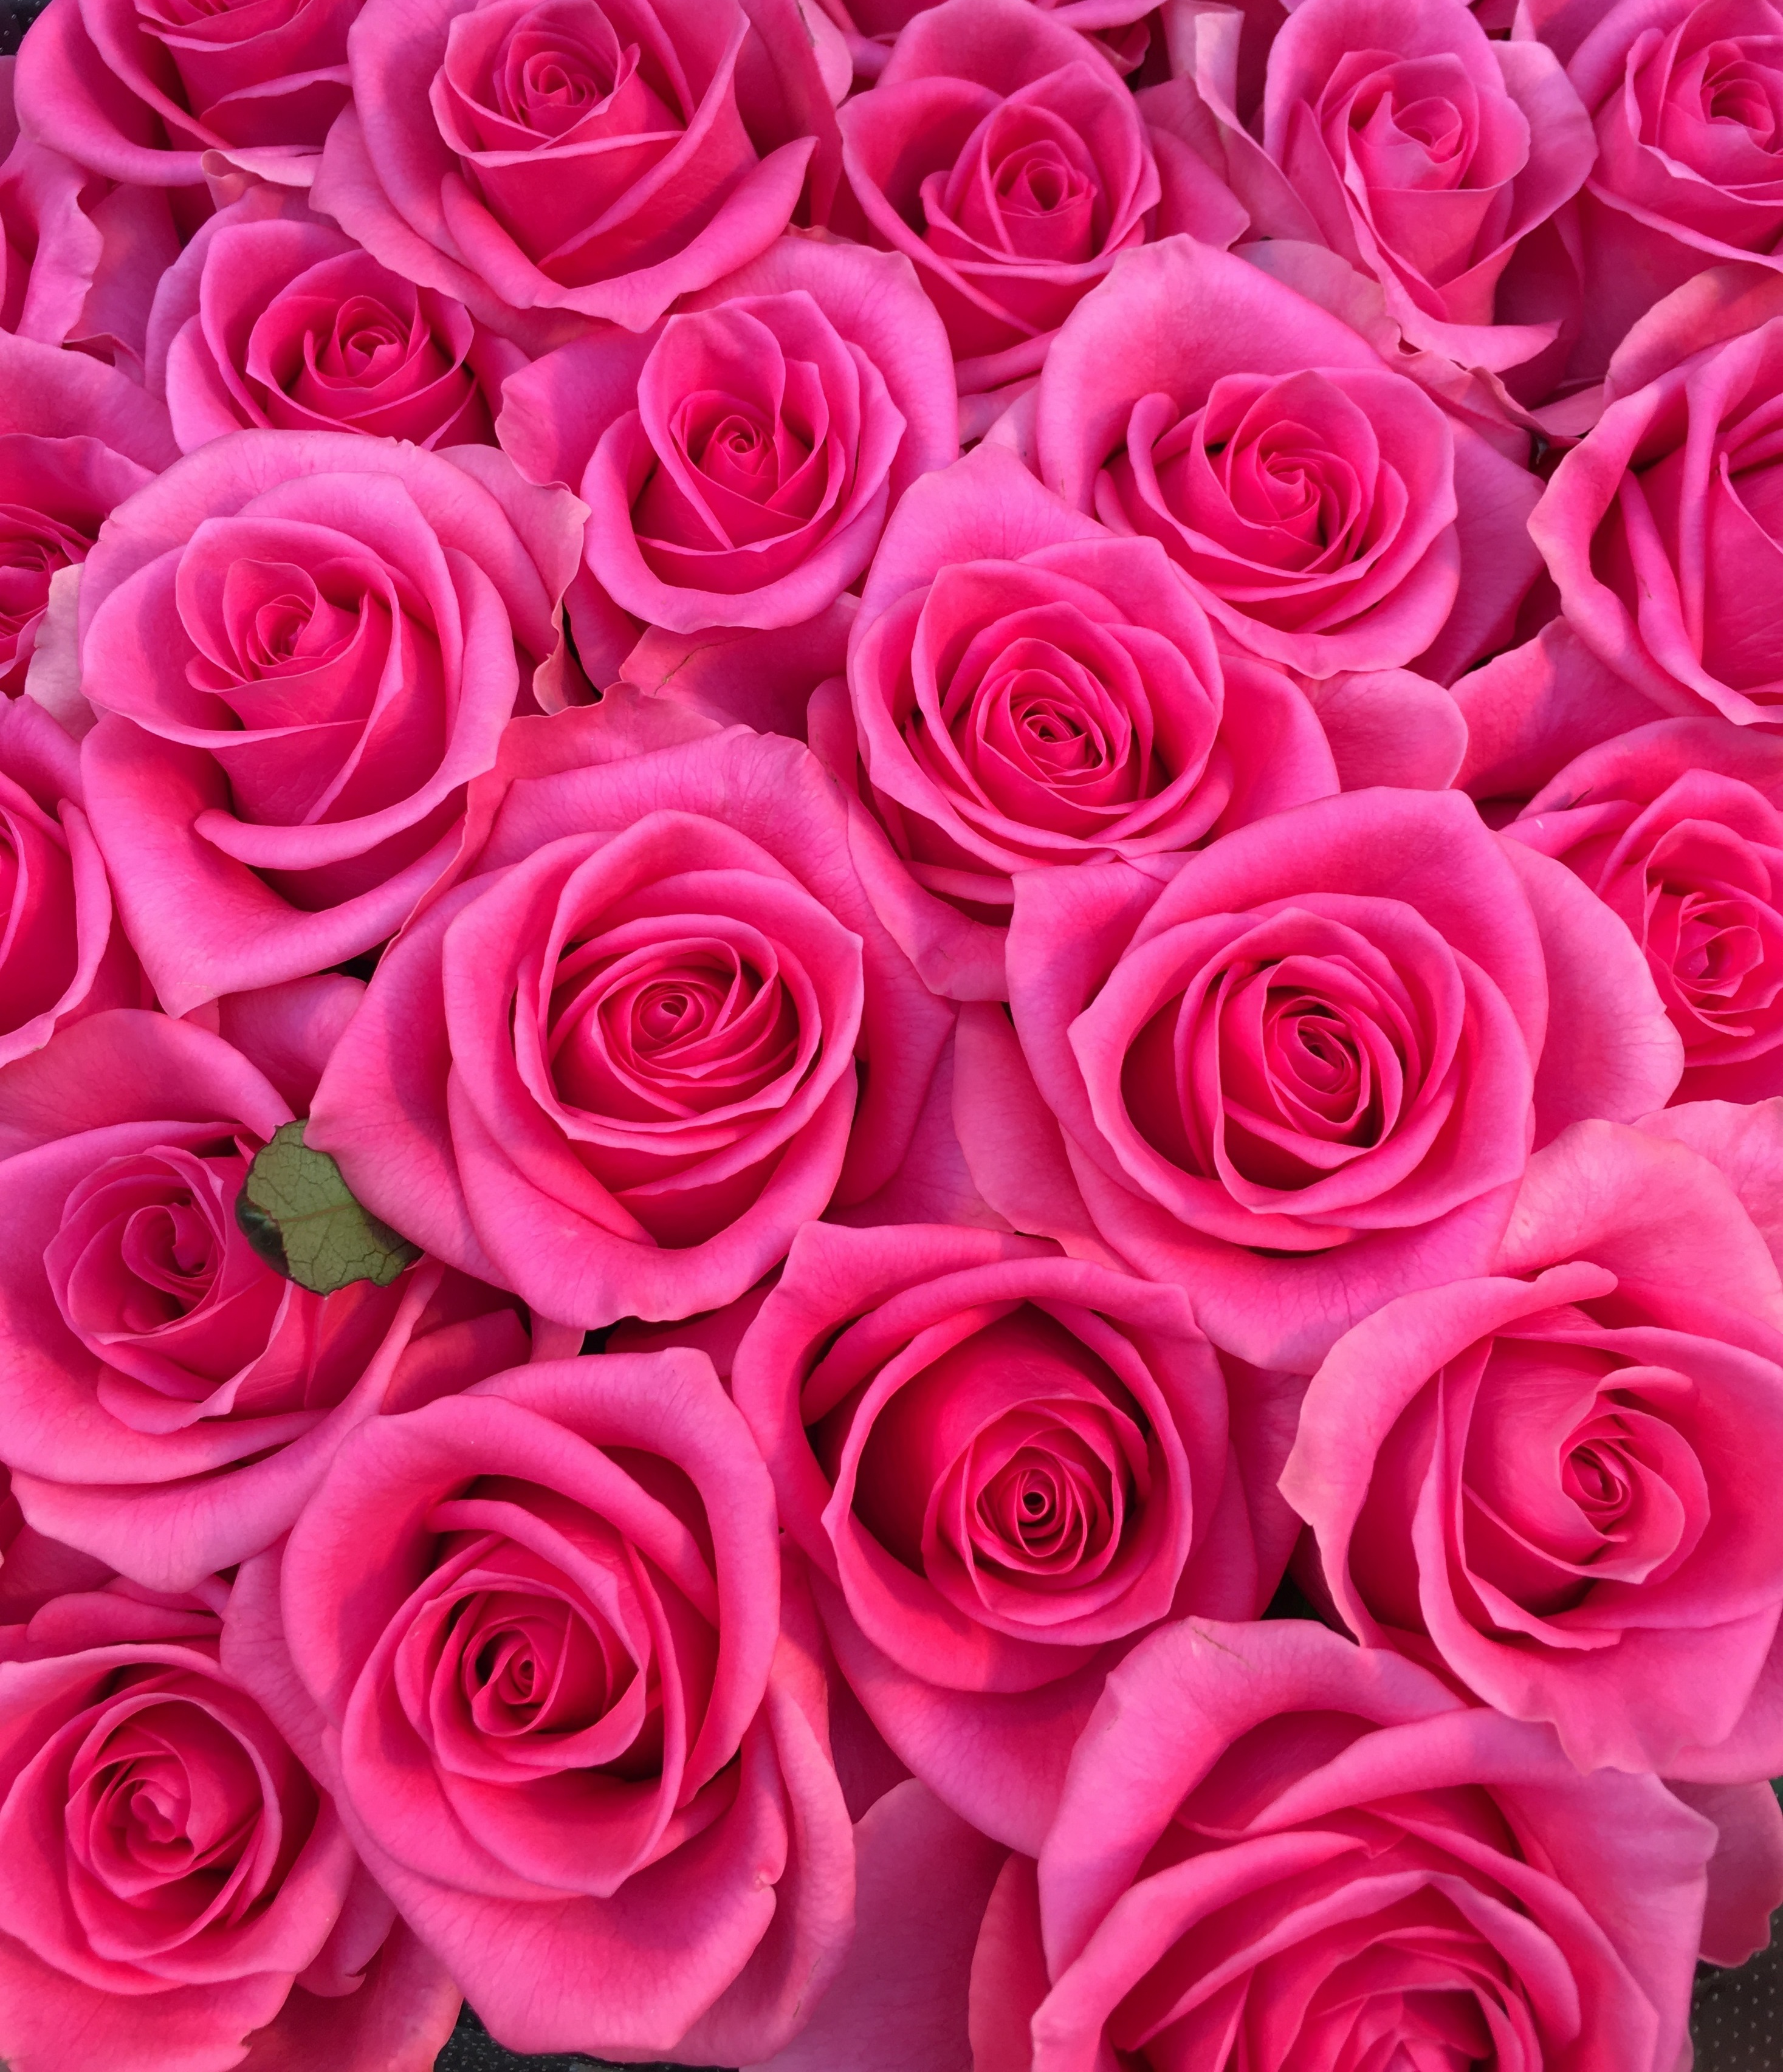 花屋 Hanaya １００本バラ 大輪ピンクバラ プロポーズの花束 記念日の花束 結婚記念日の花束 特別な花束 １００本 １０８本 バラ ローズ 薔薇 Rose Rose Roses Roses